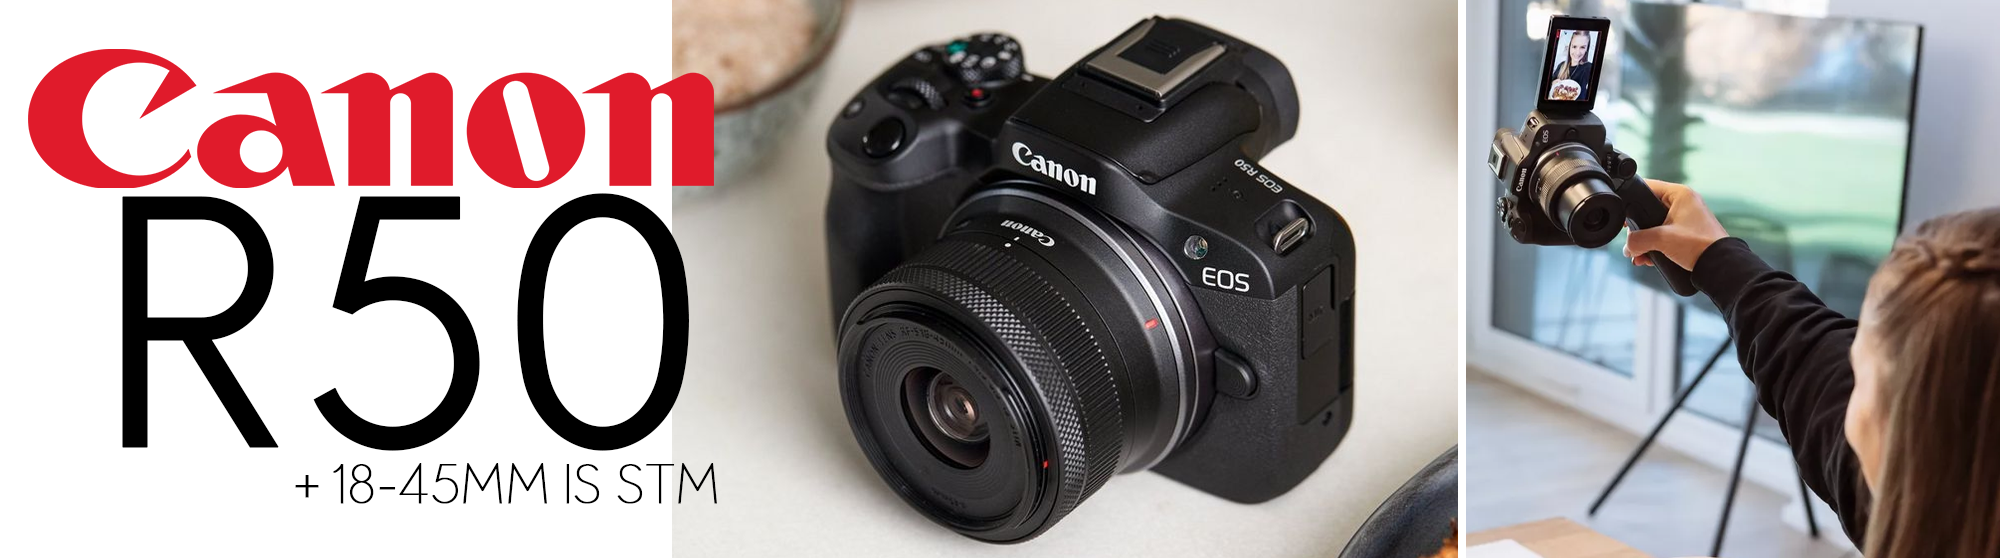 Canon EOS R50 - Disponible hoy en Colombia - Bogotá